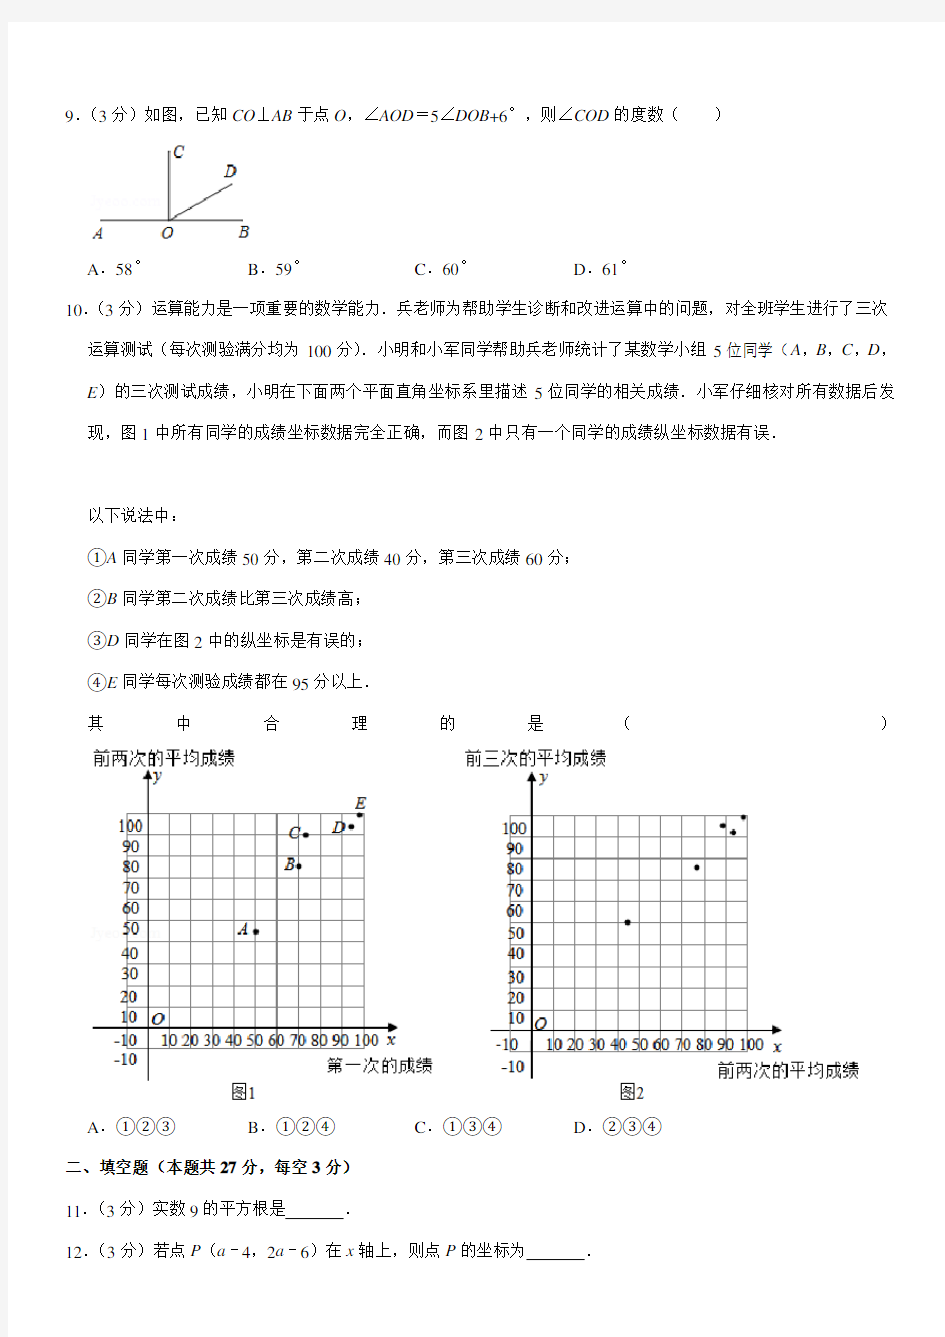 2019-2020学年北京人大附中七年级(下)期中数学试卷